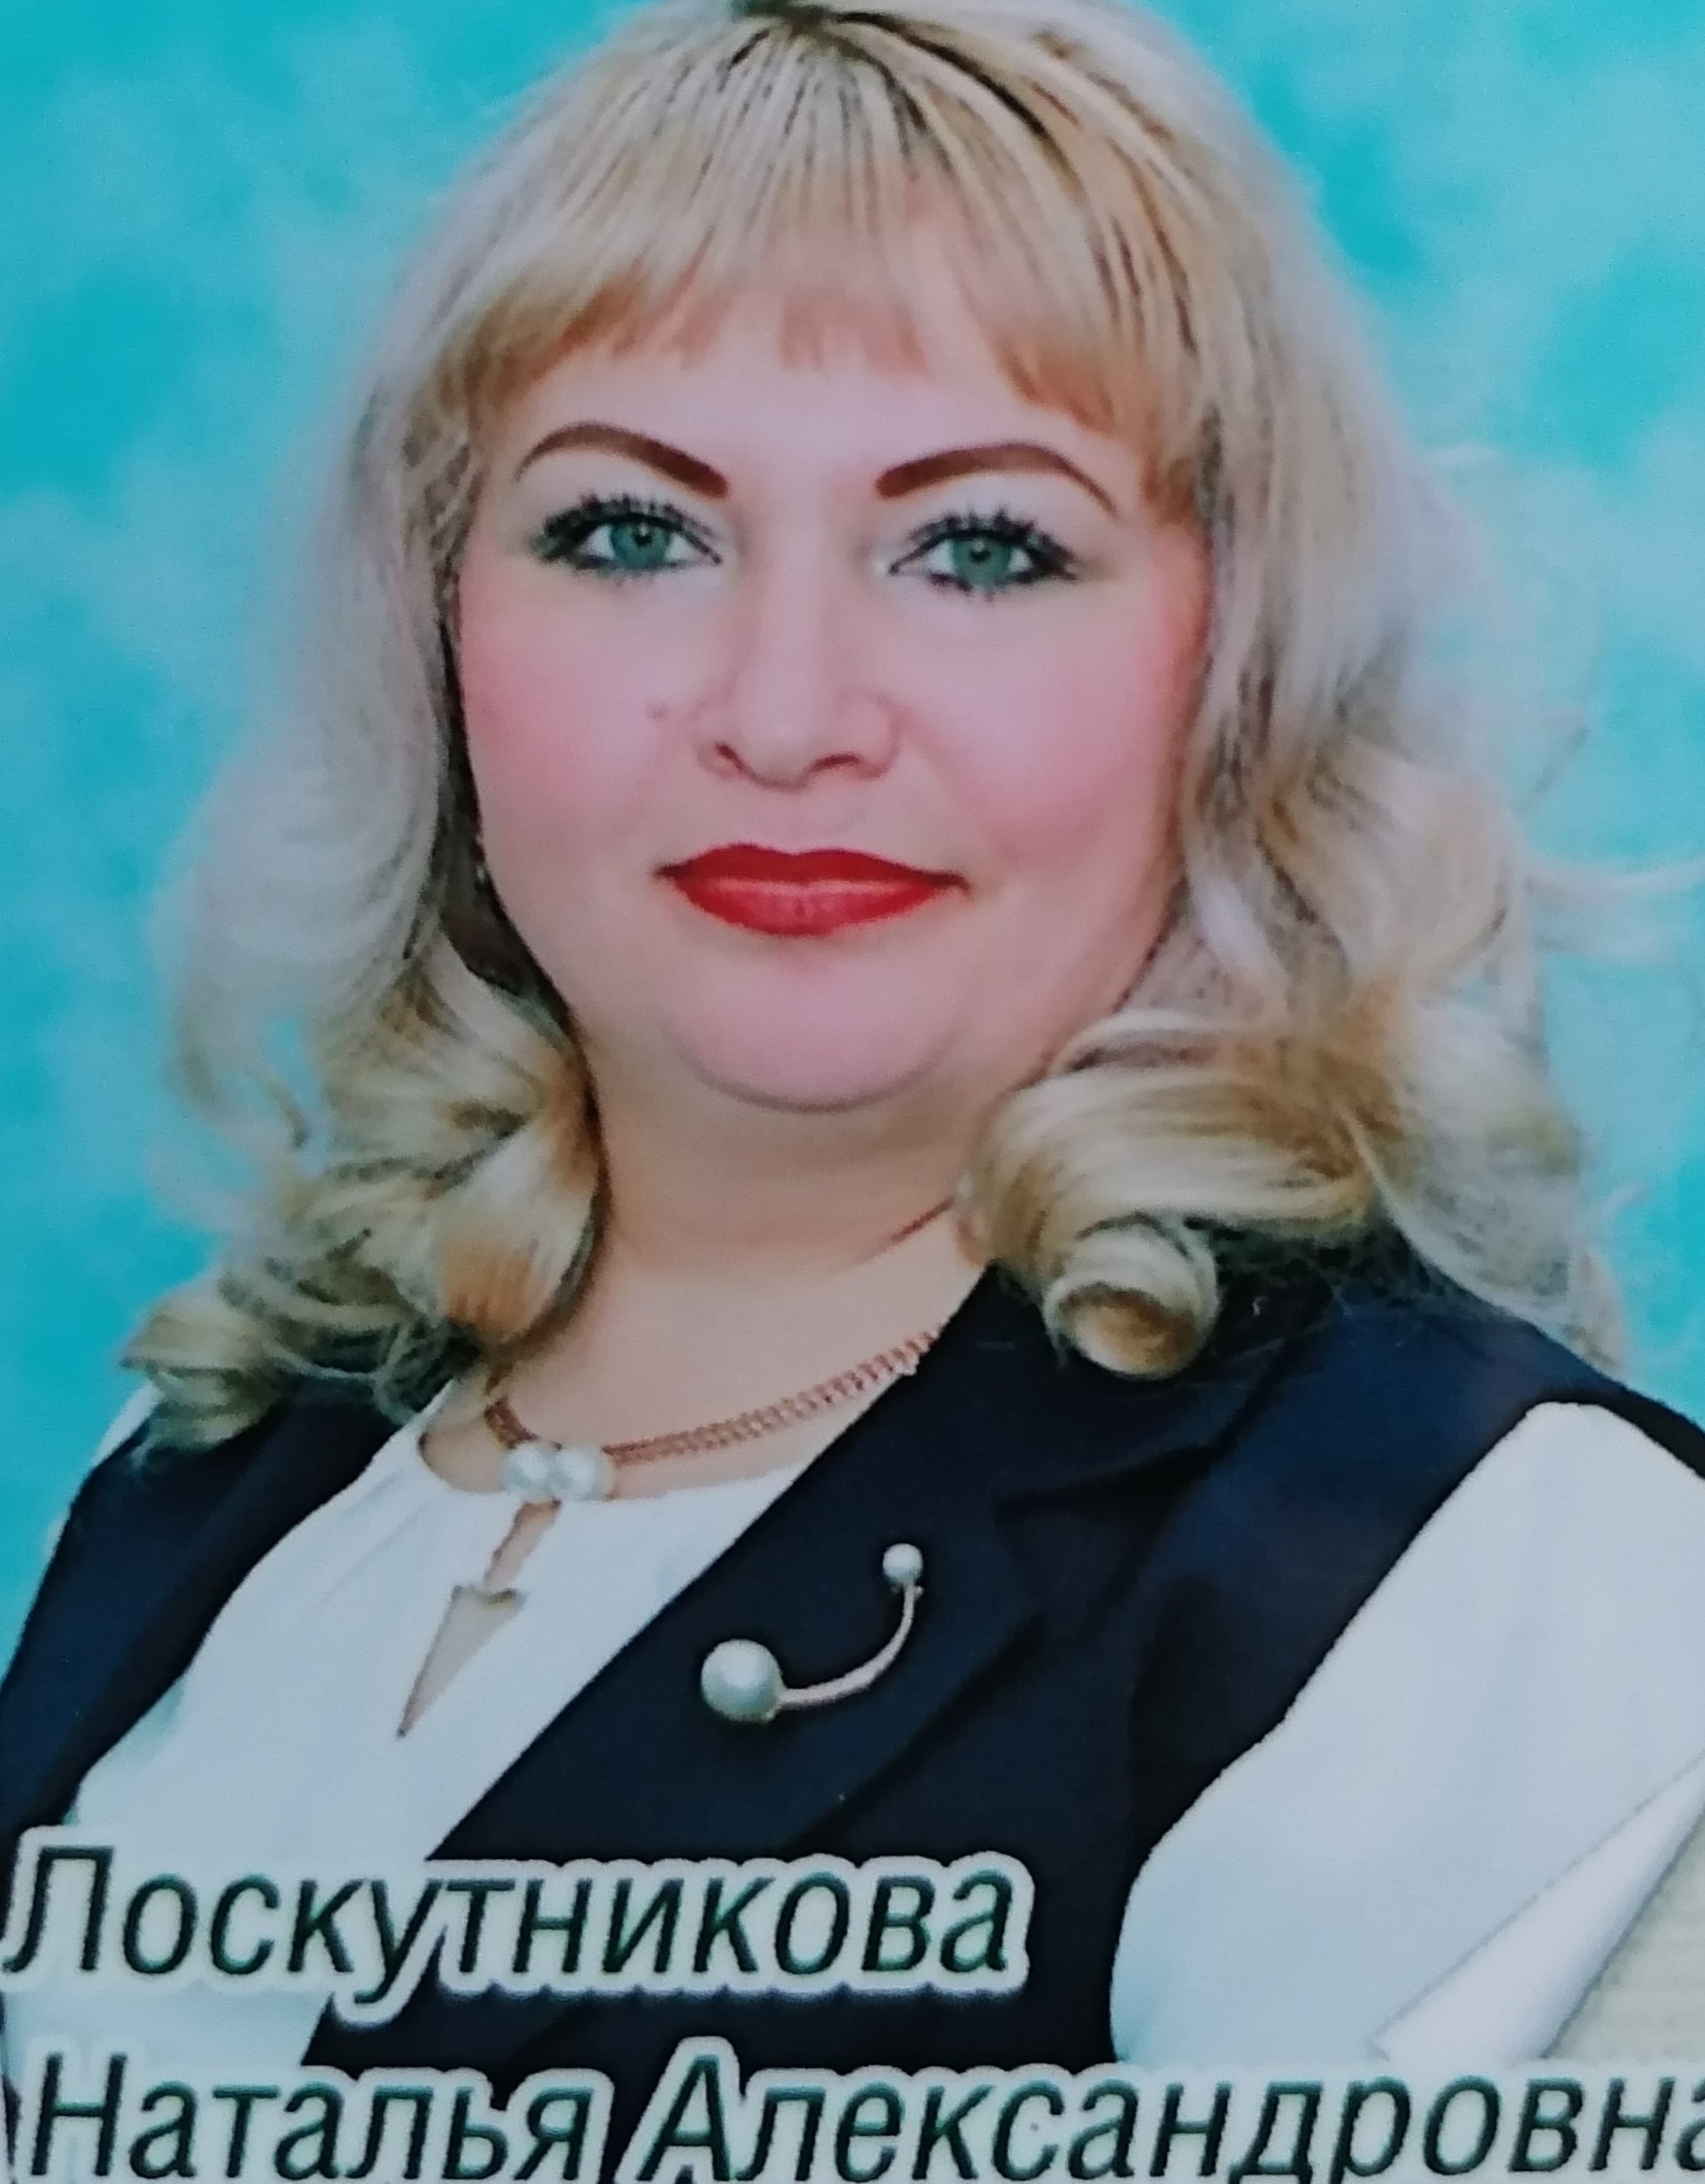 Лоскутникова Наталья Александровна.